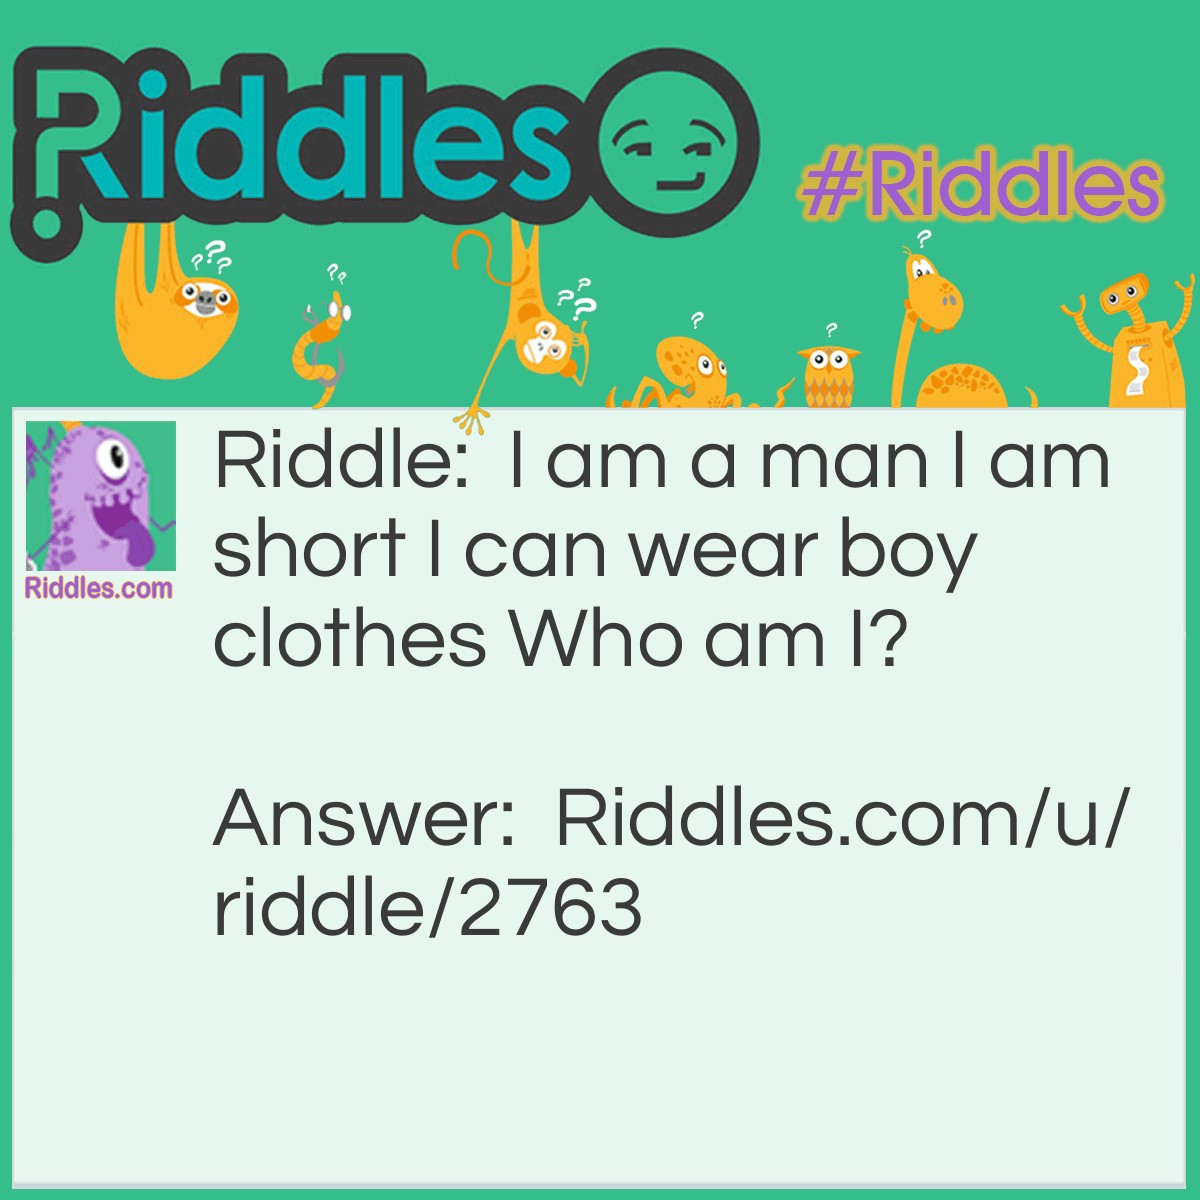 Riddle: I am a man, I am short, I can wear boy clothes. Who am I? Answer: A dwarf.